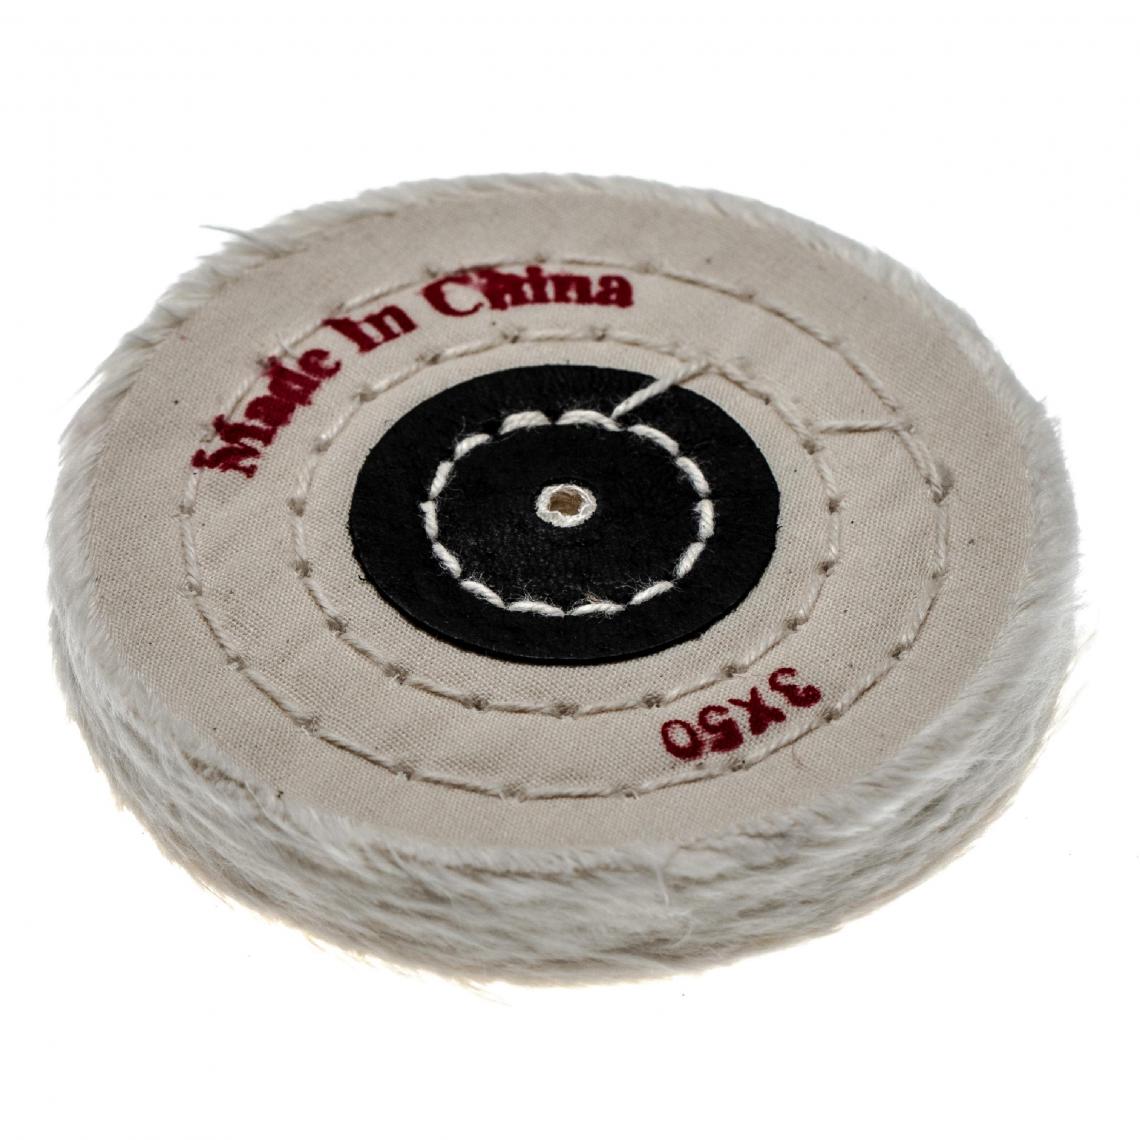 Vhbw - vhbw Bonnet de lustrage pour polisseuse d'angle, perceuse courante - Pad de rechange avec diamètre de 7,5cm, coton - Clouterie